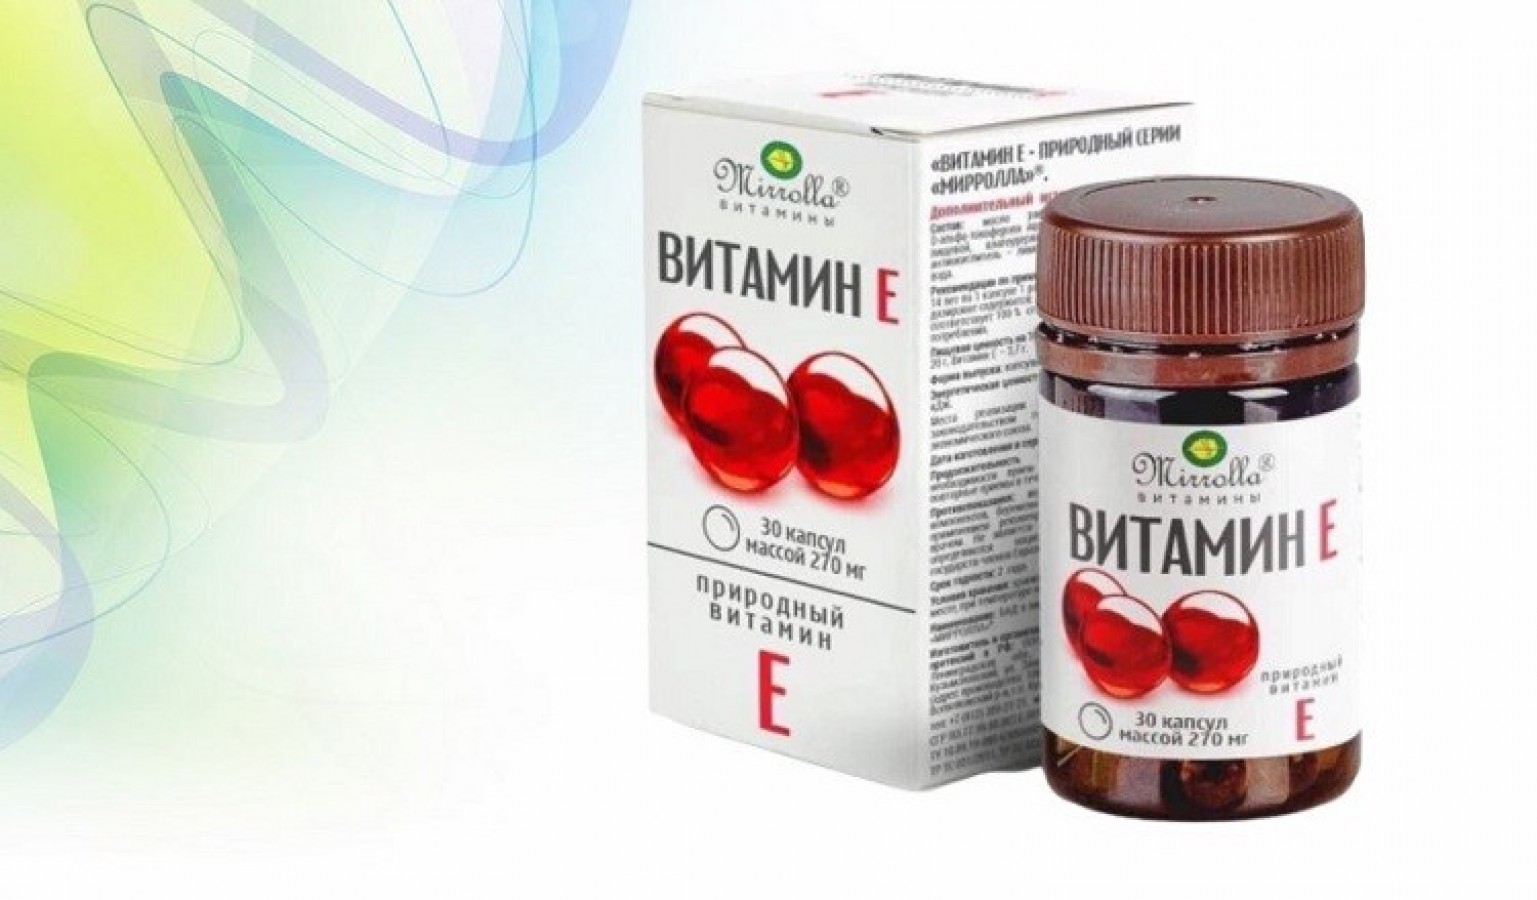 Vitamin E Đỏ Của Nga Mirrolla 270mg Mẫu Mới Hộp 30 Viên